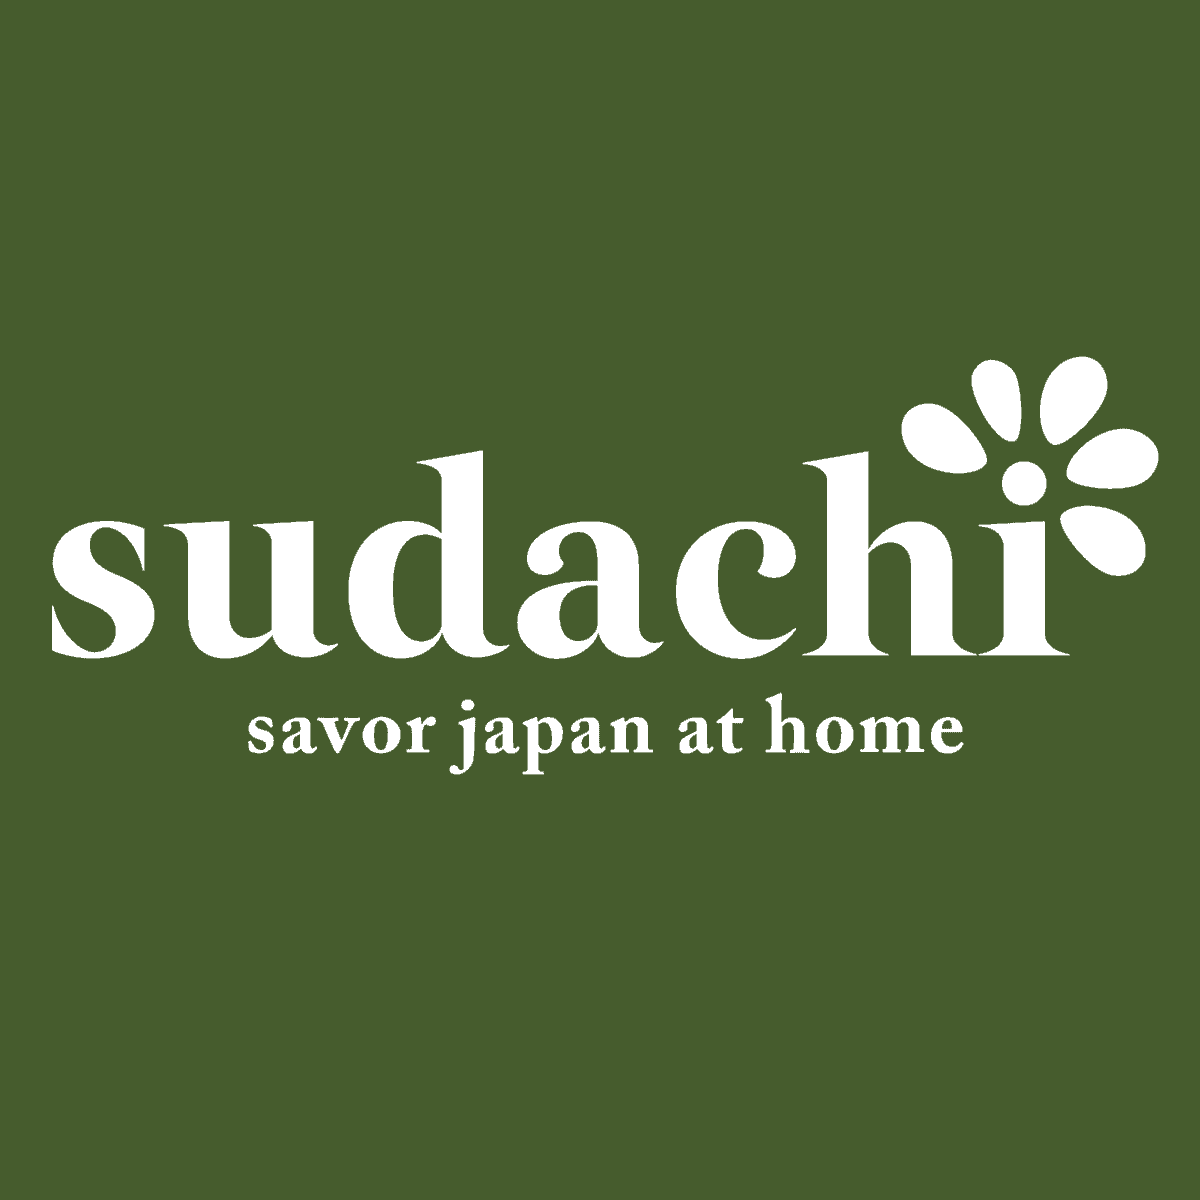 sudachi homepage logo